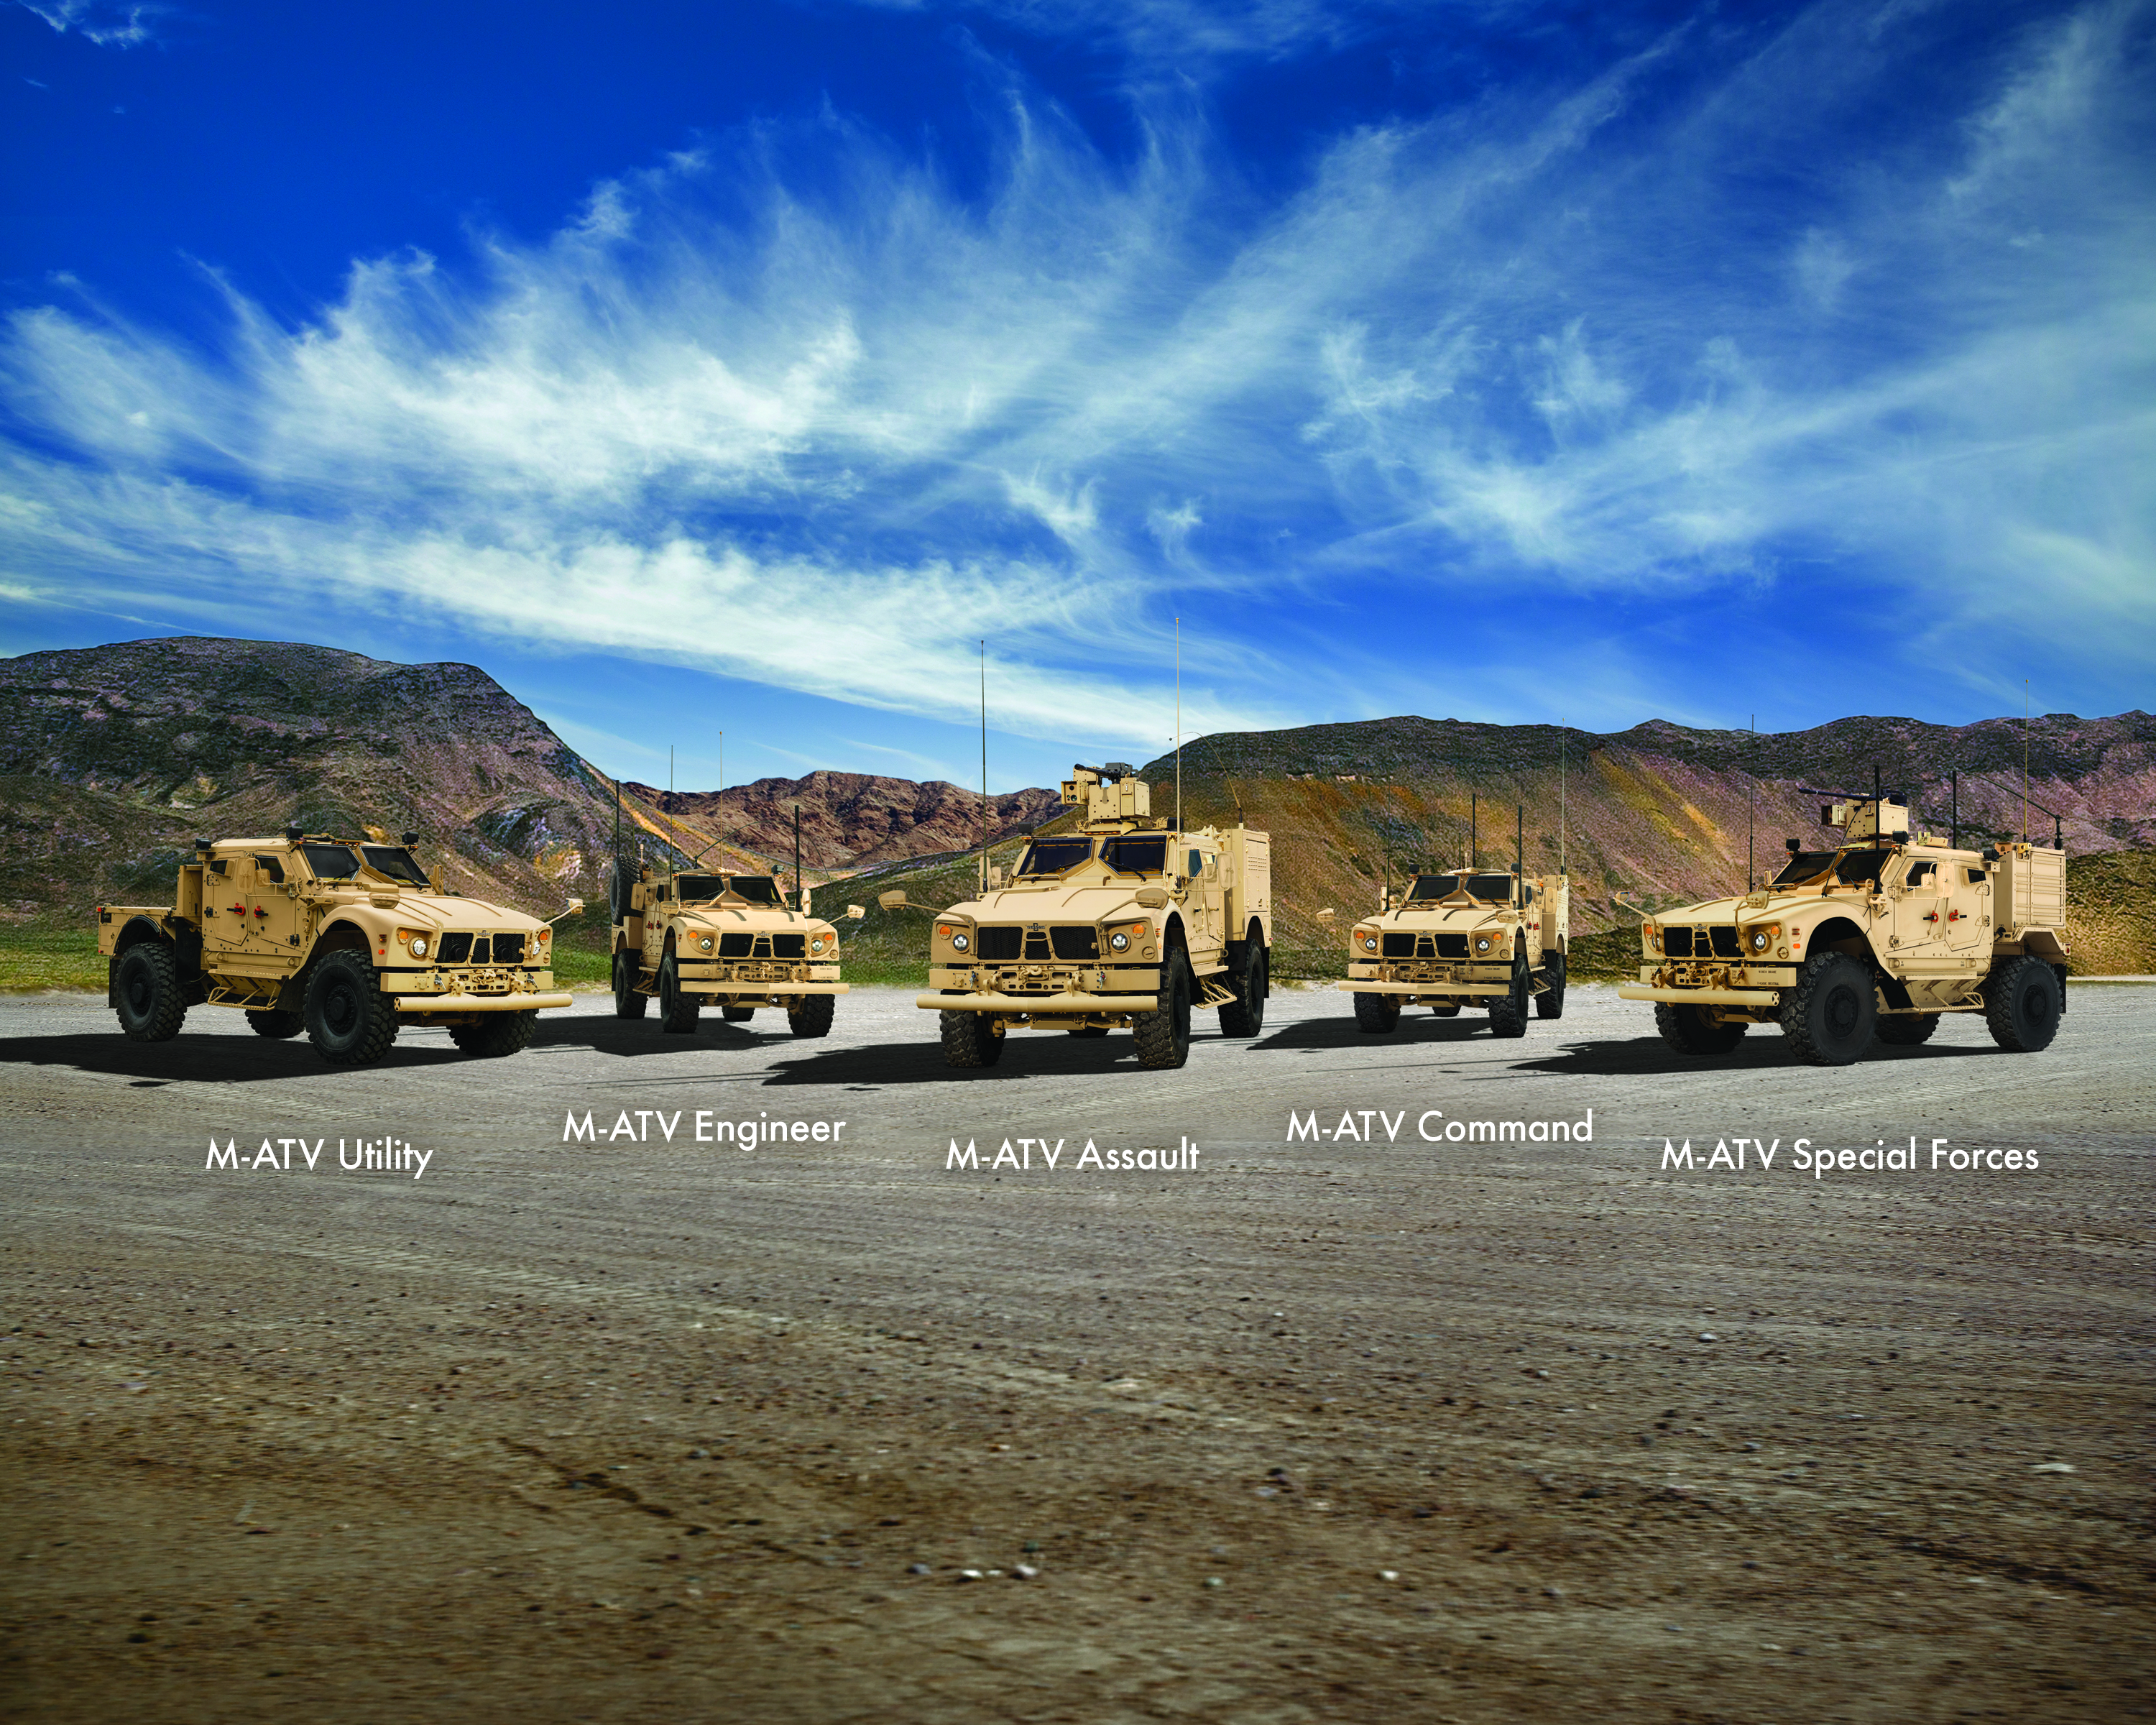 Oshkosh Defense Global M-ATV Line-up by Oshkosh Defense